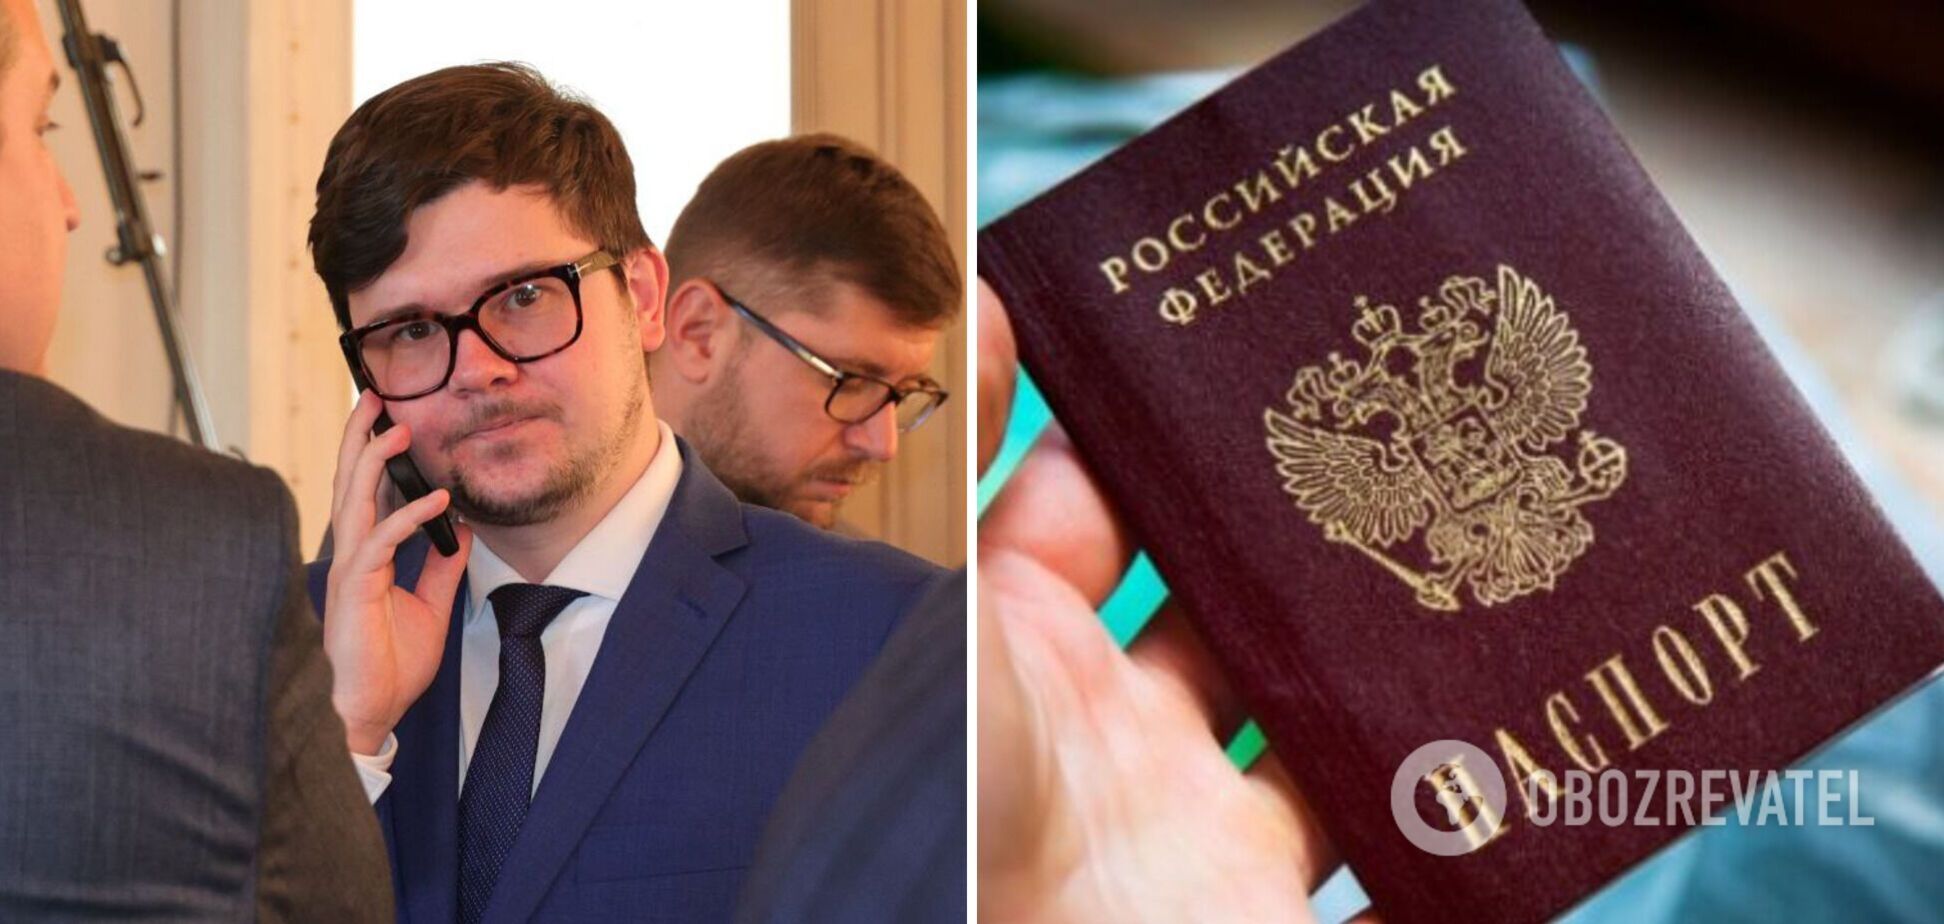 У заступника голови Харківської облради знайшли паспорт РФ: чиновника вже відсторонили від посади 